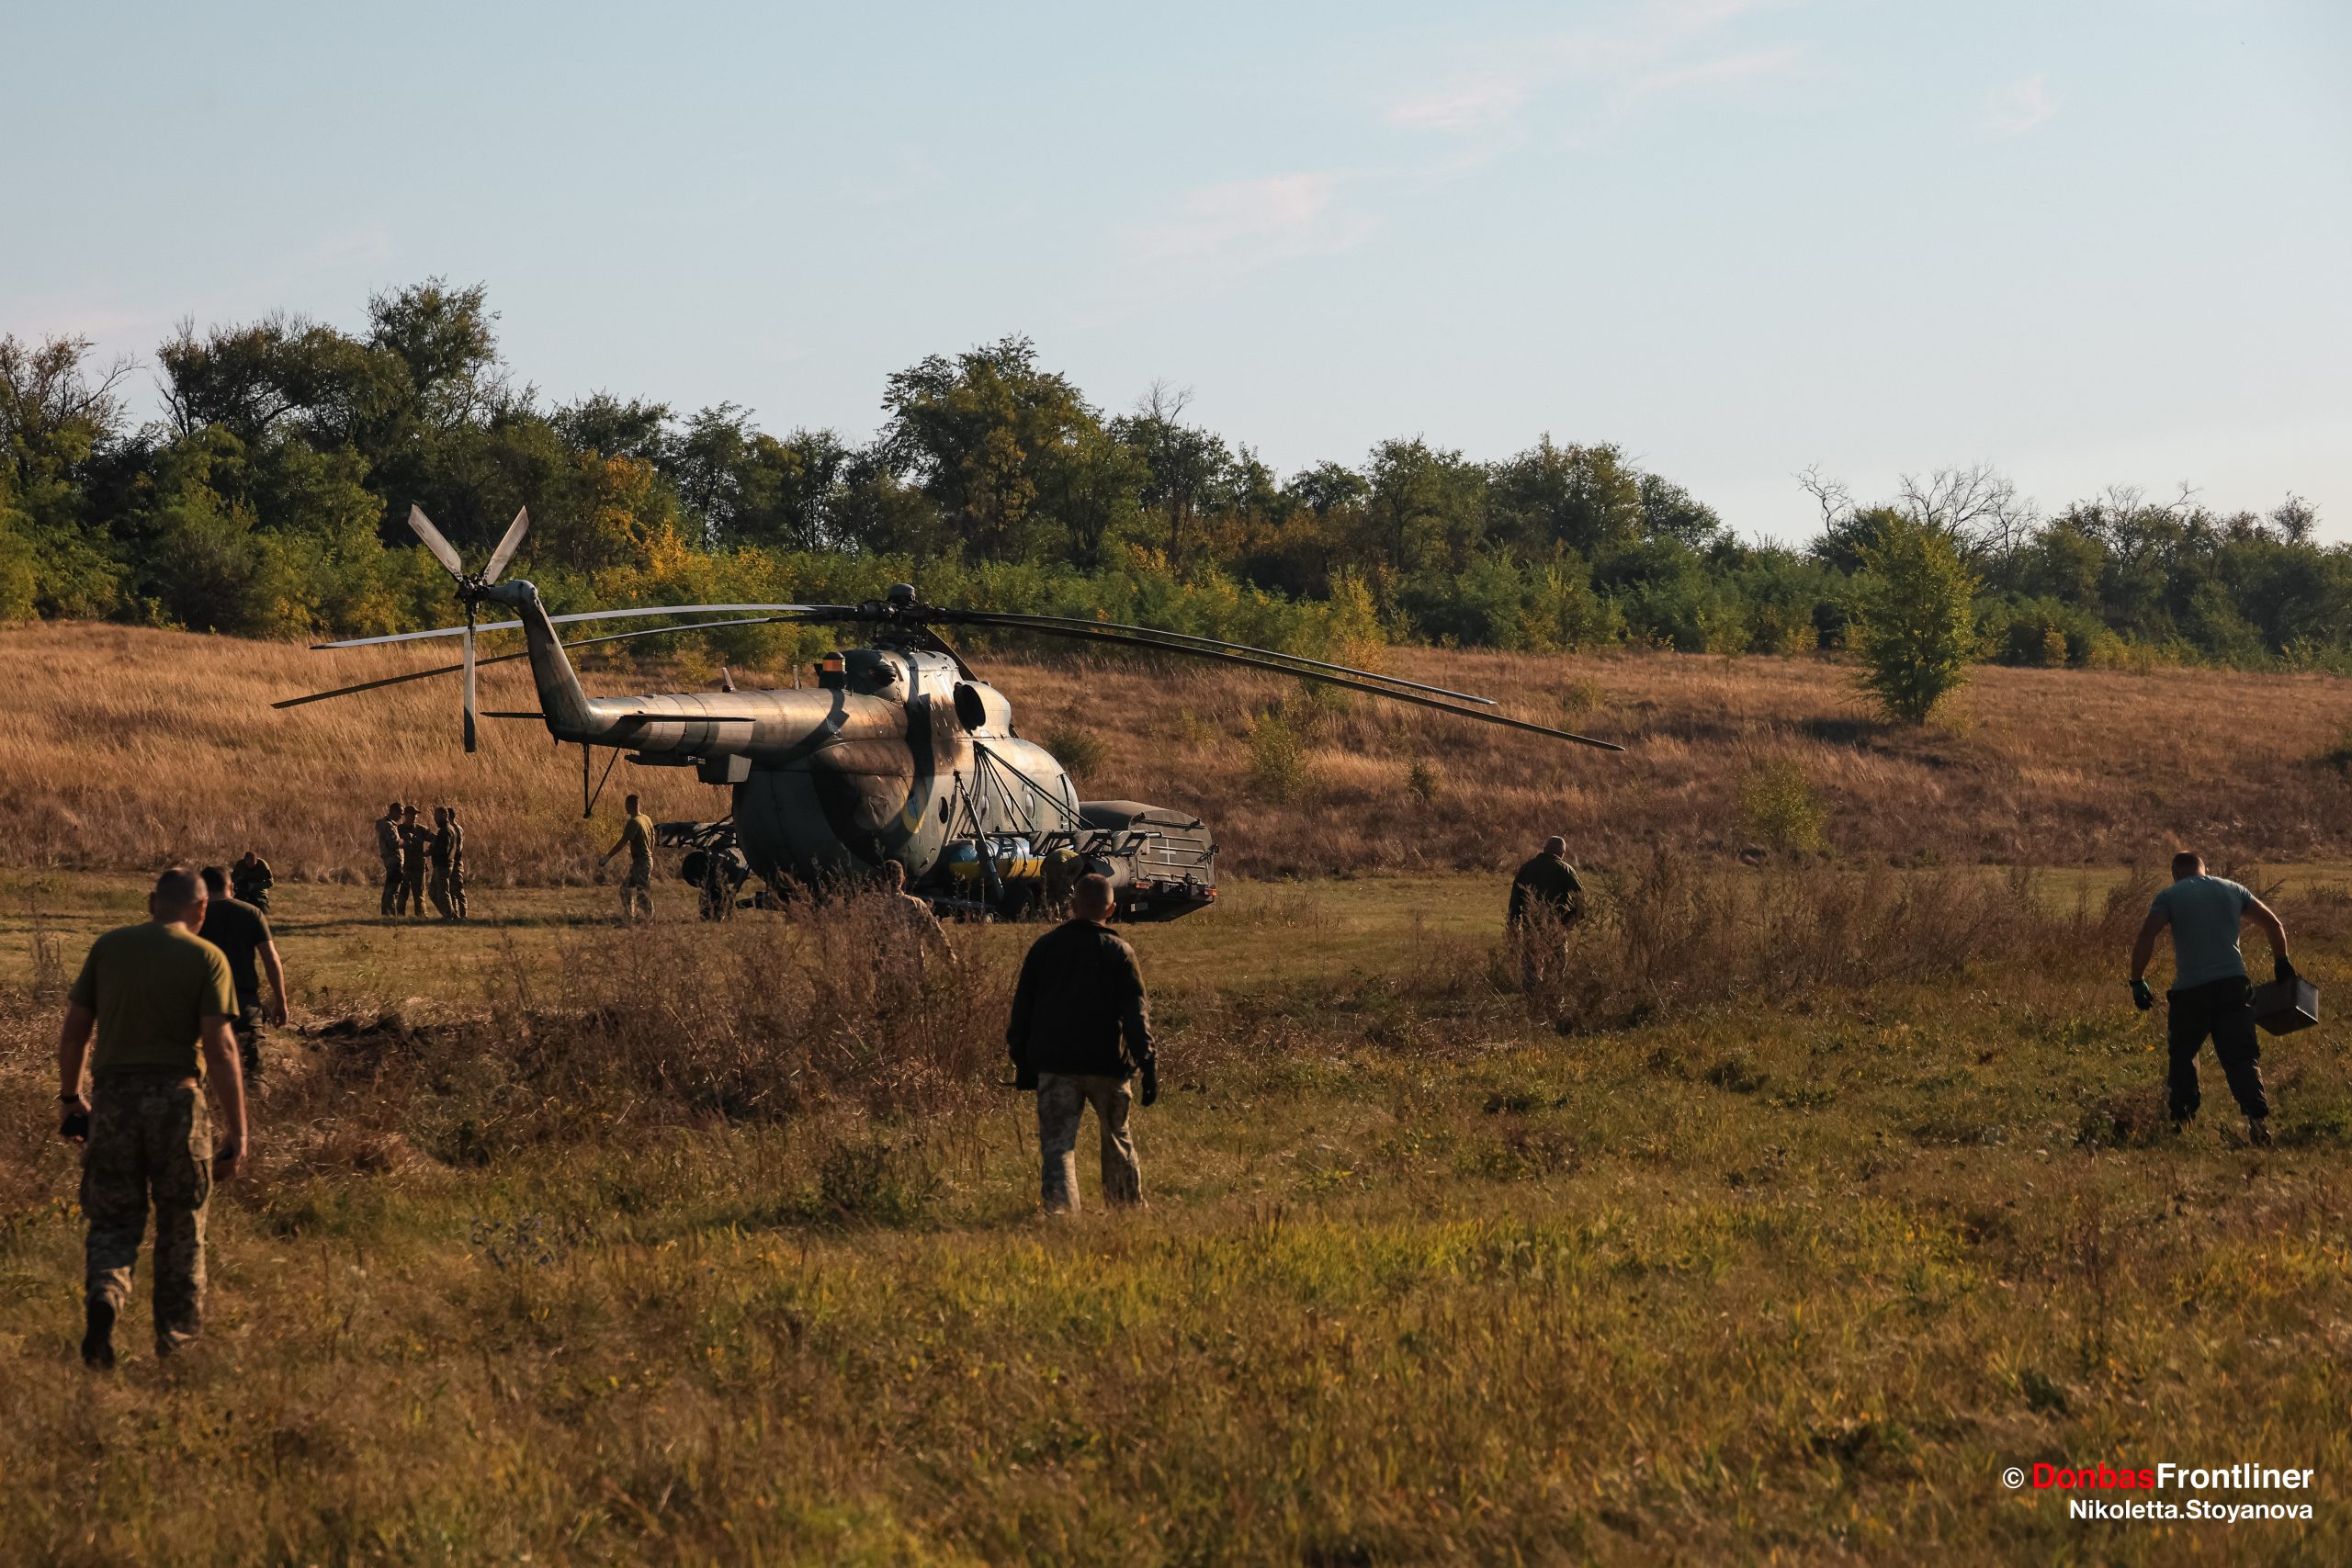 Donbas Frontliner / Пілоти прямують до гелікоптера, після повернення з бойового завдання